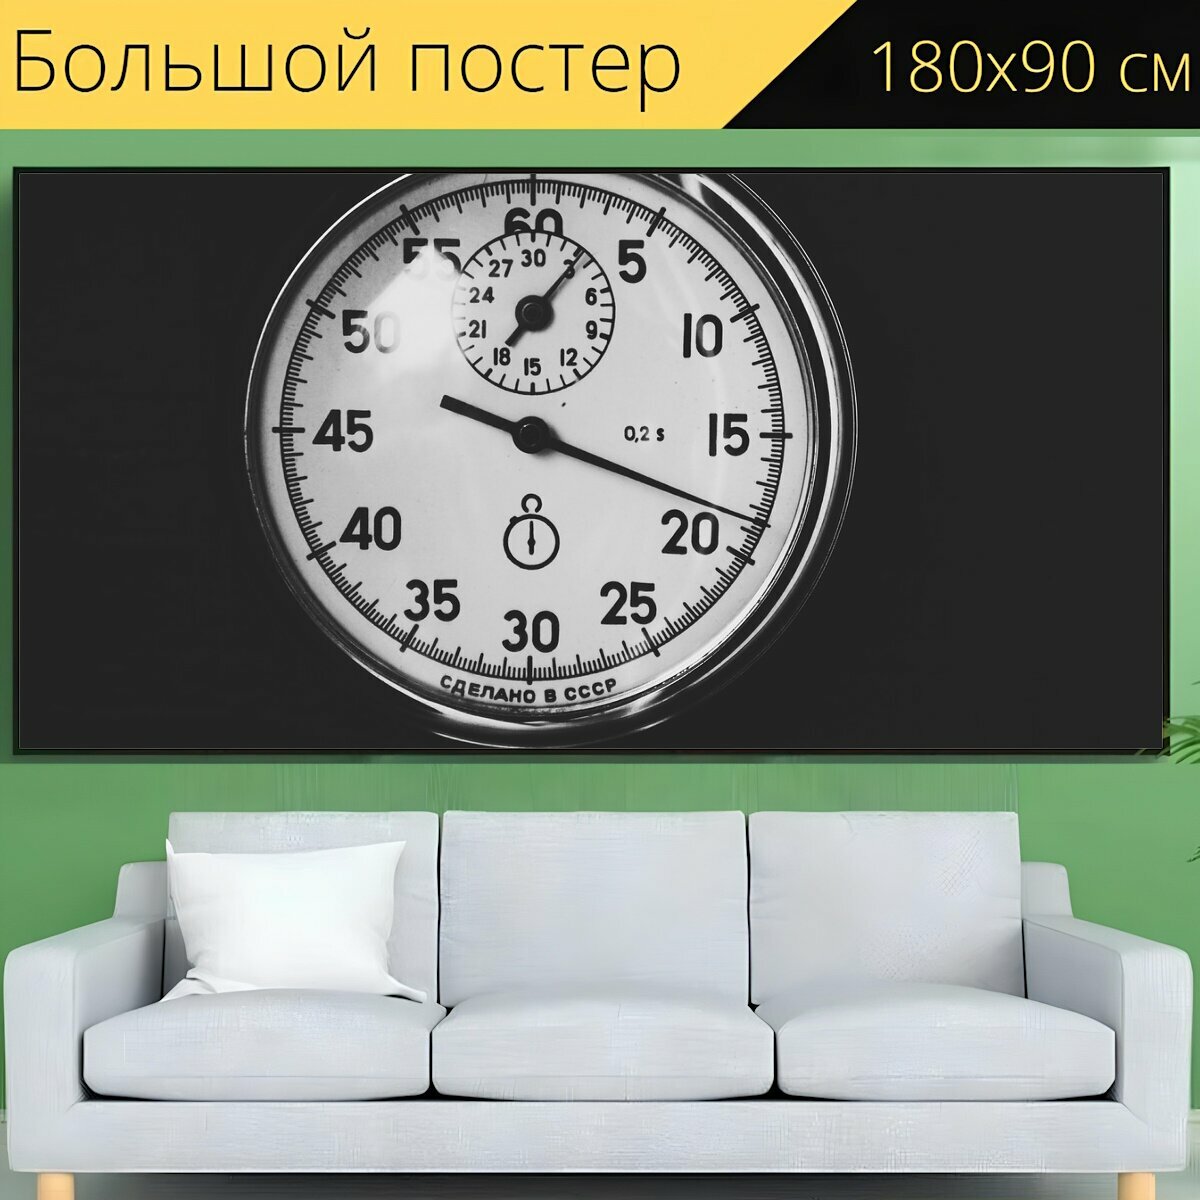 Большой постер "Время, секундомер, часы" 180 x 90 см. для интерьера